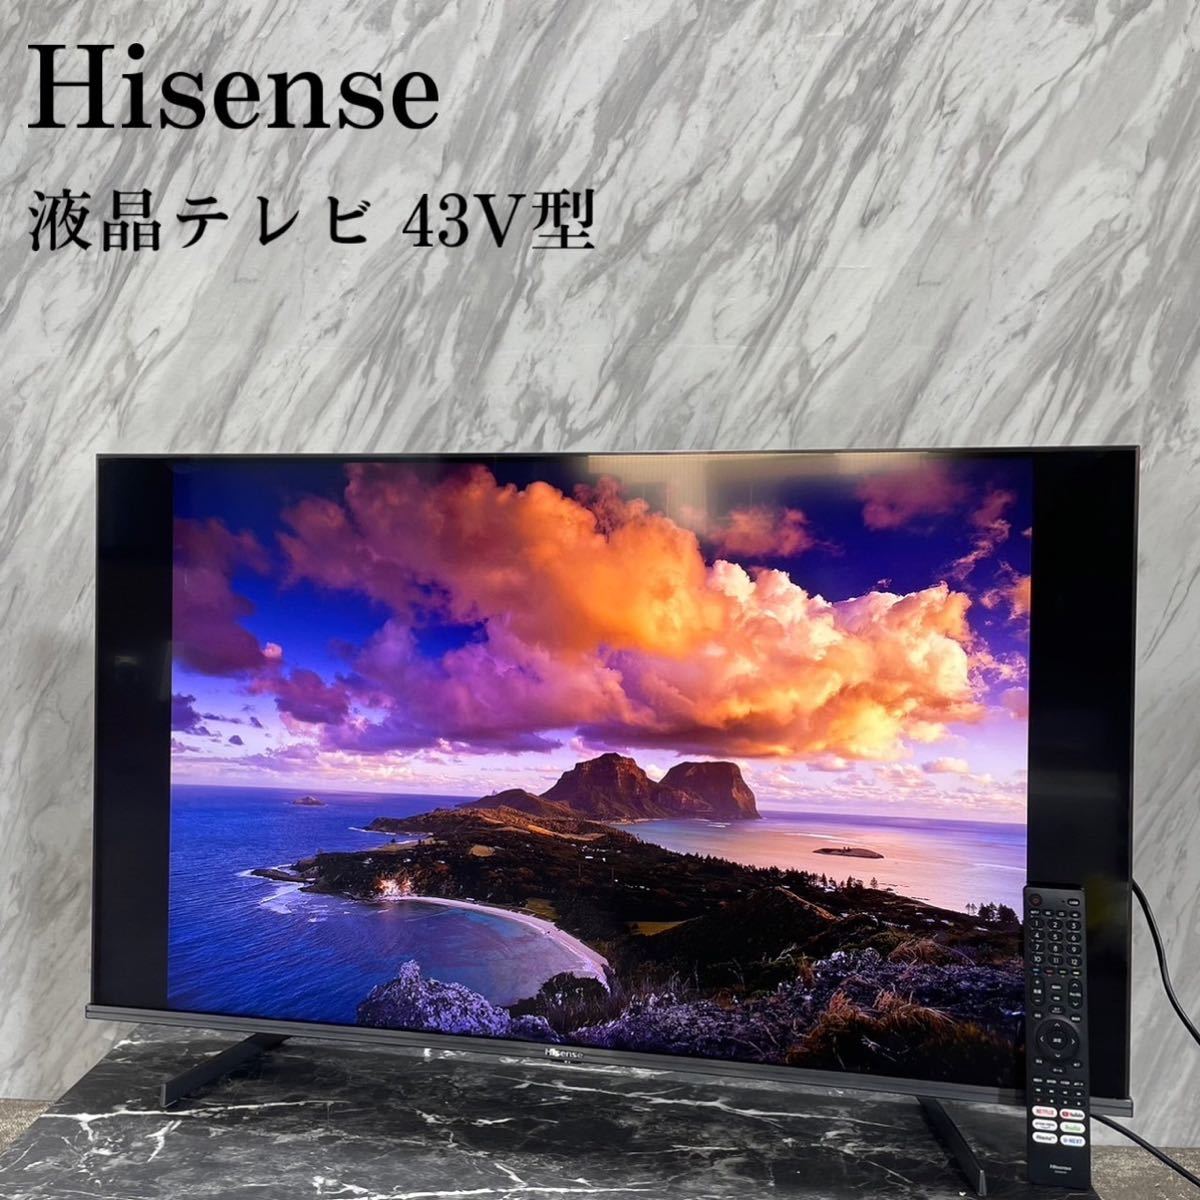 Hisense ハイビジョンLED液晶テレビ 43A50 43V型 G121-